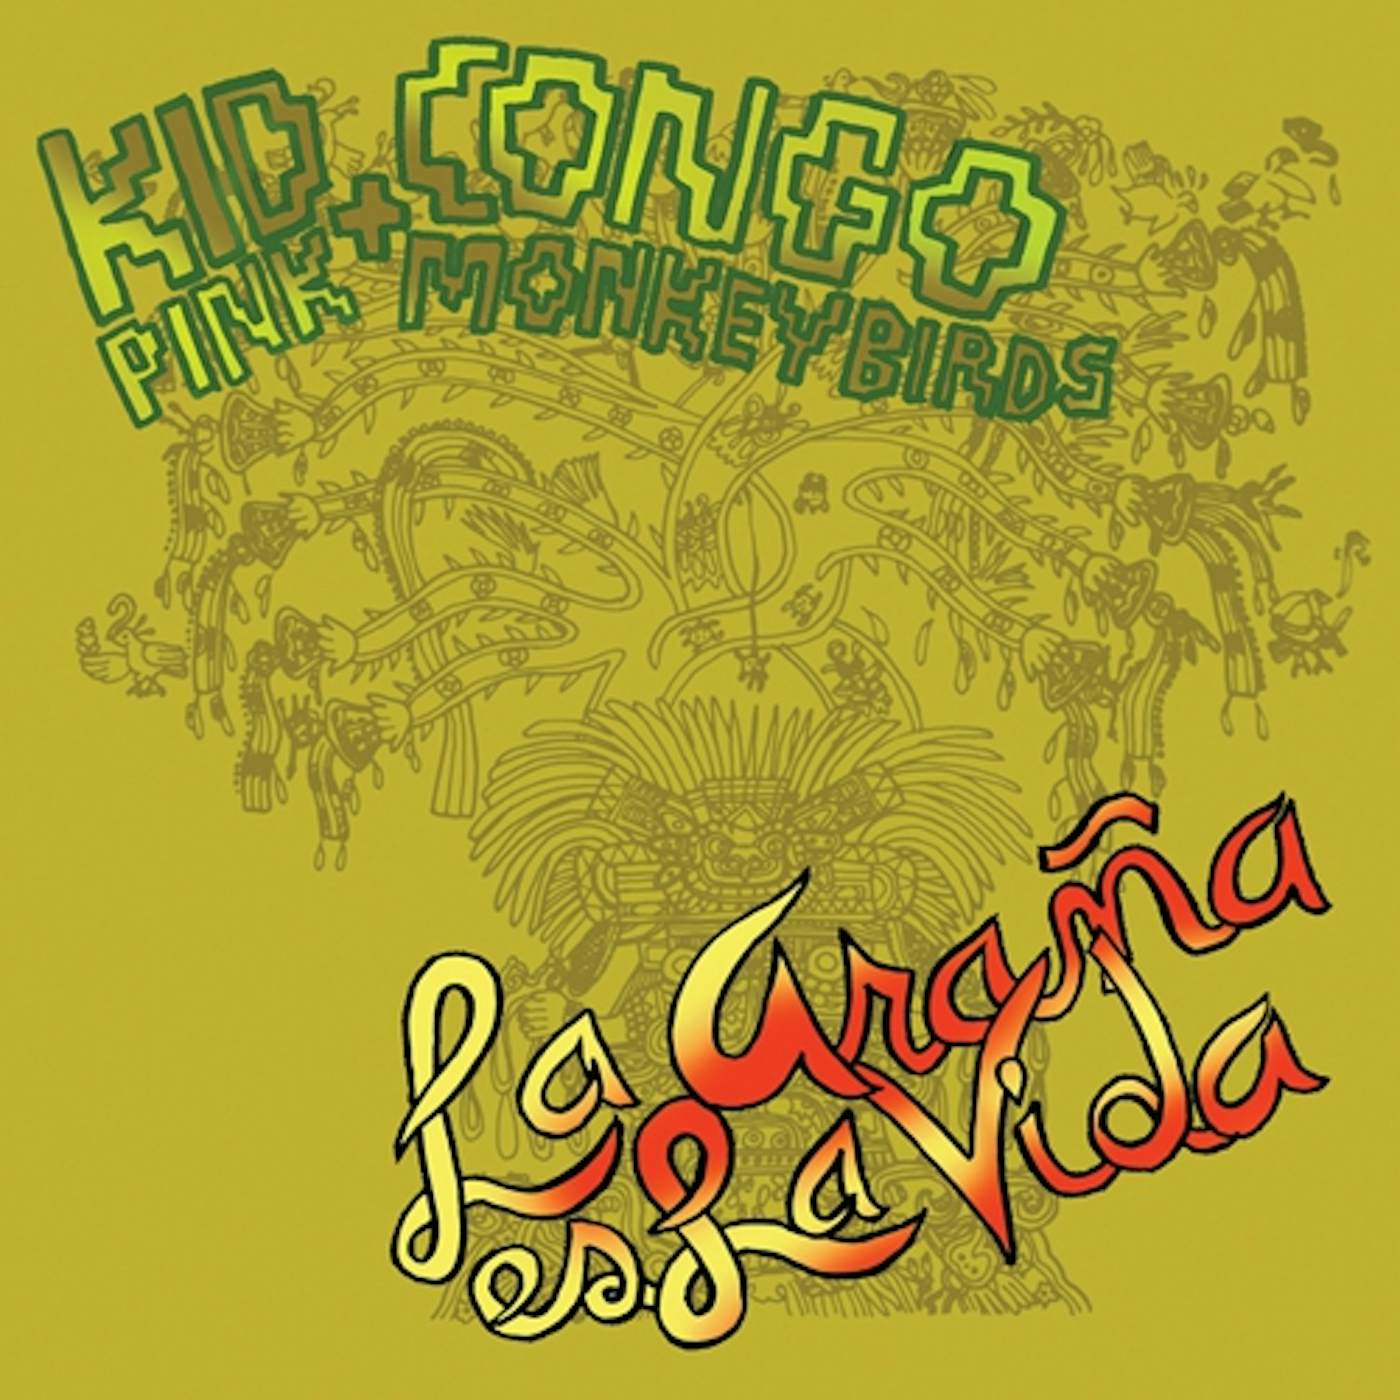 Kid Congo & the Pink Monkey Birds LA ARANA ES LA VIDA CD